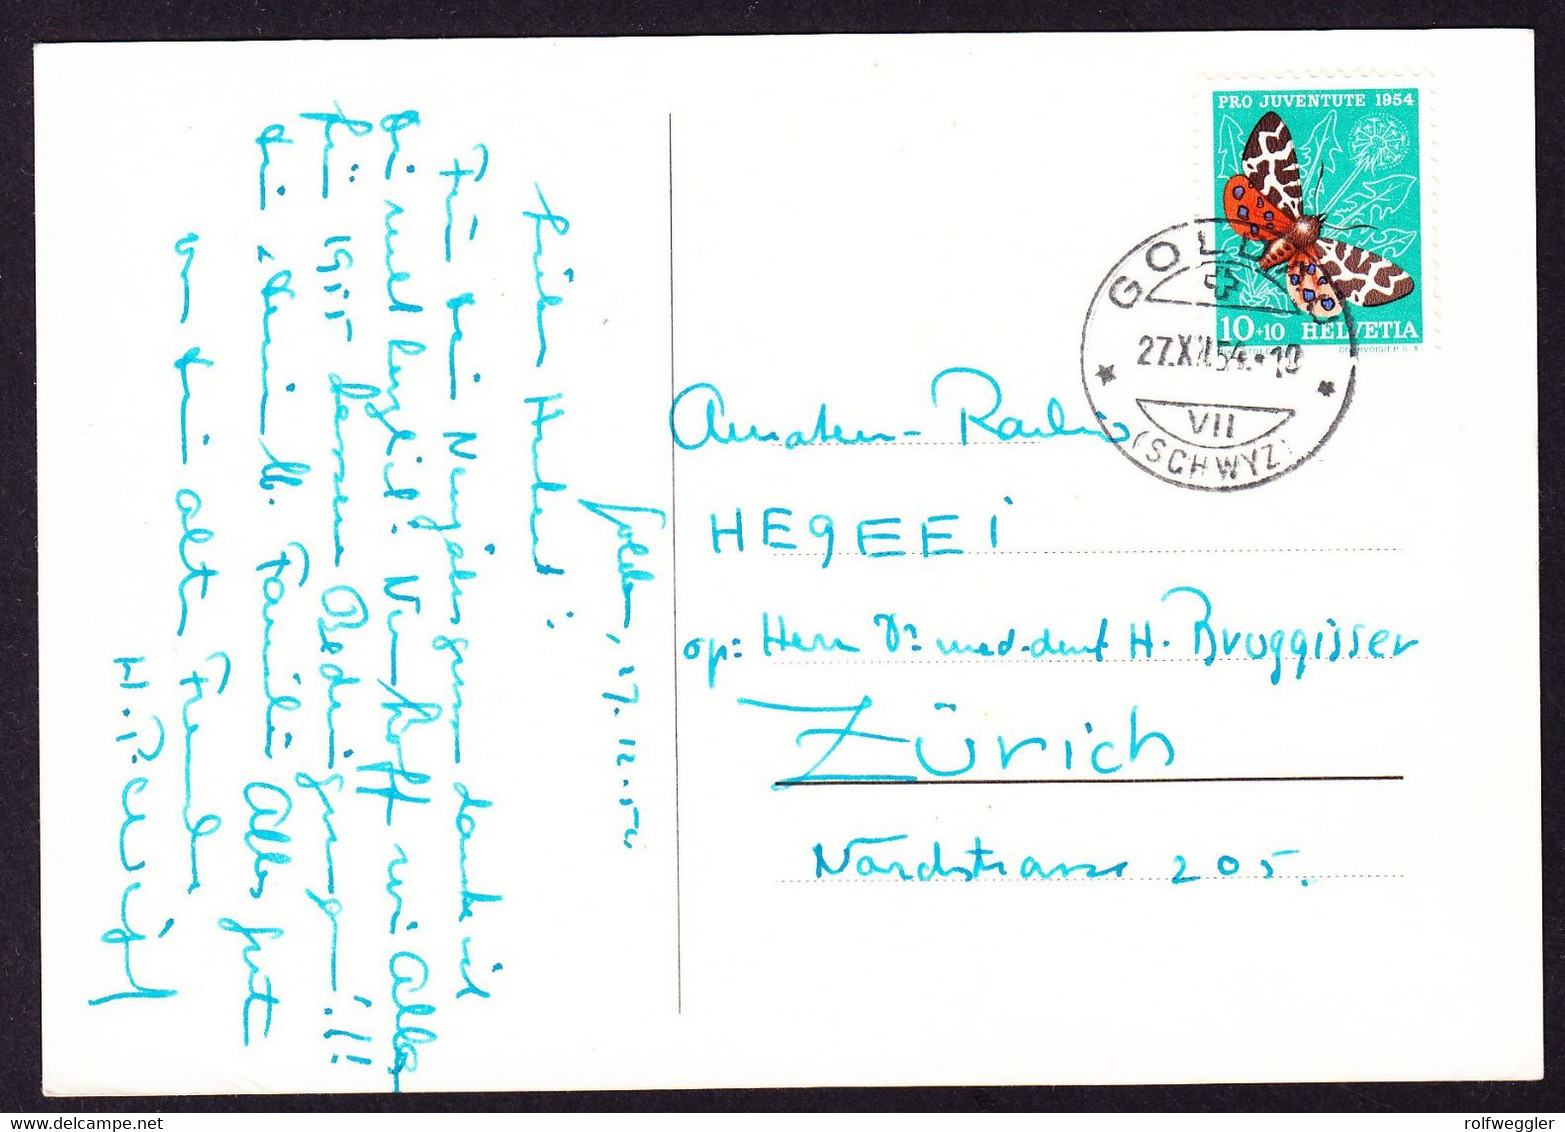 1954 Stempel GOLDAU Mit Juventute Marke (Brauner Bär) Auf Funkerkarte. - Telegraph